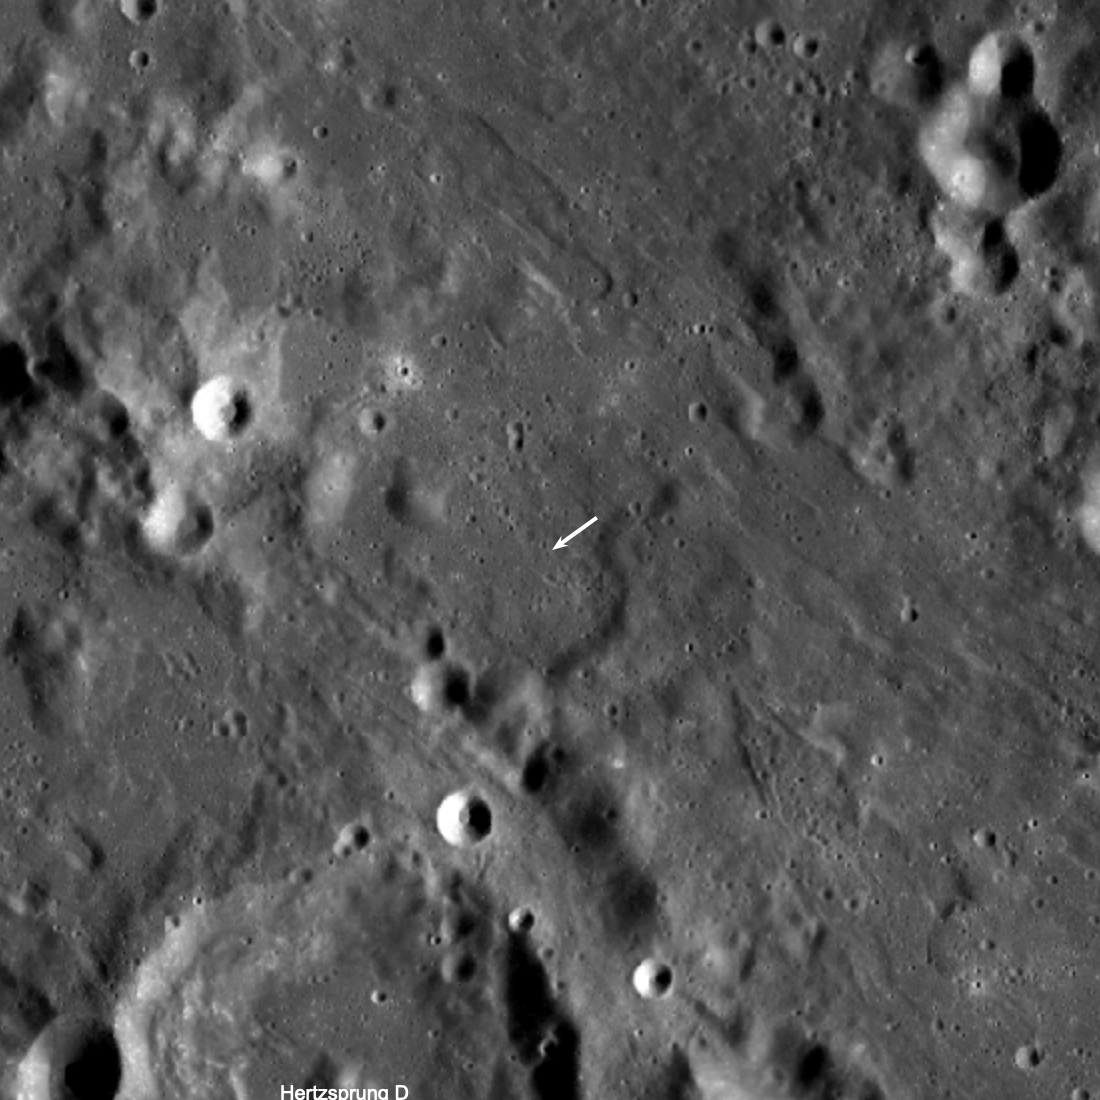 Una parte misteriosa del cohete chocó con la Luna en marzo, dejando un cráter de impacto inusual subrayado por la flecha blanca arriba